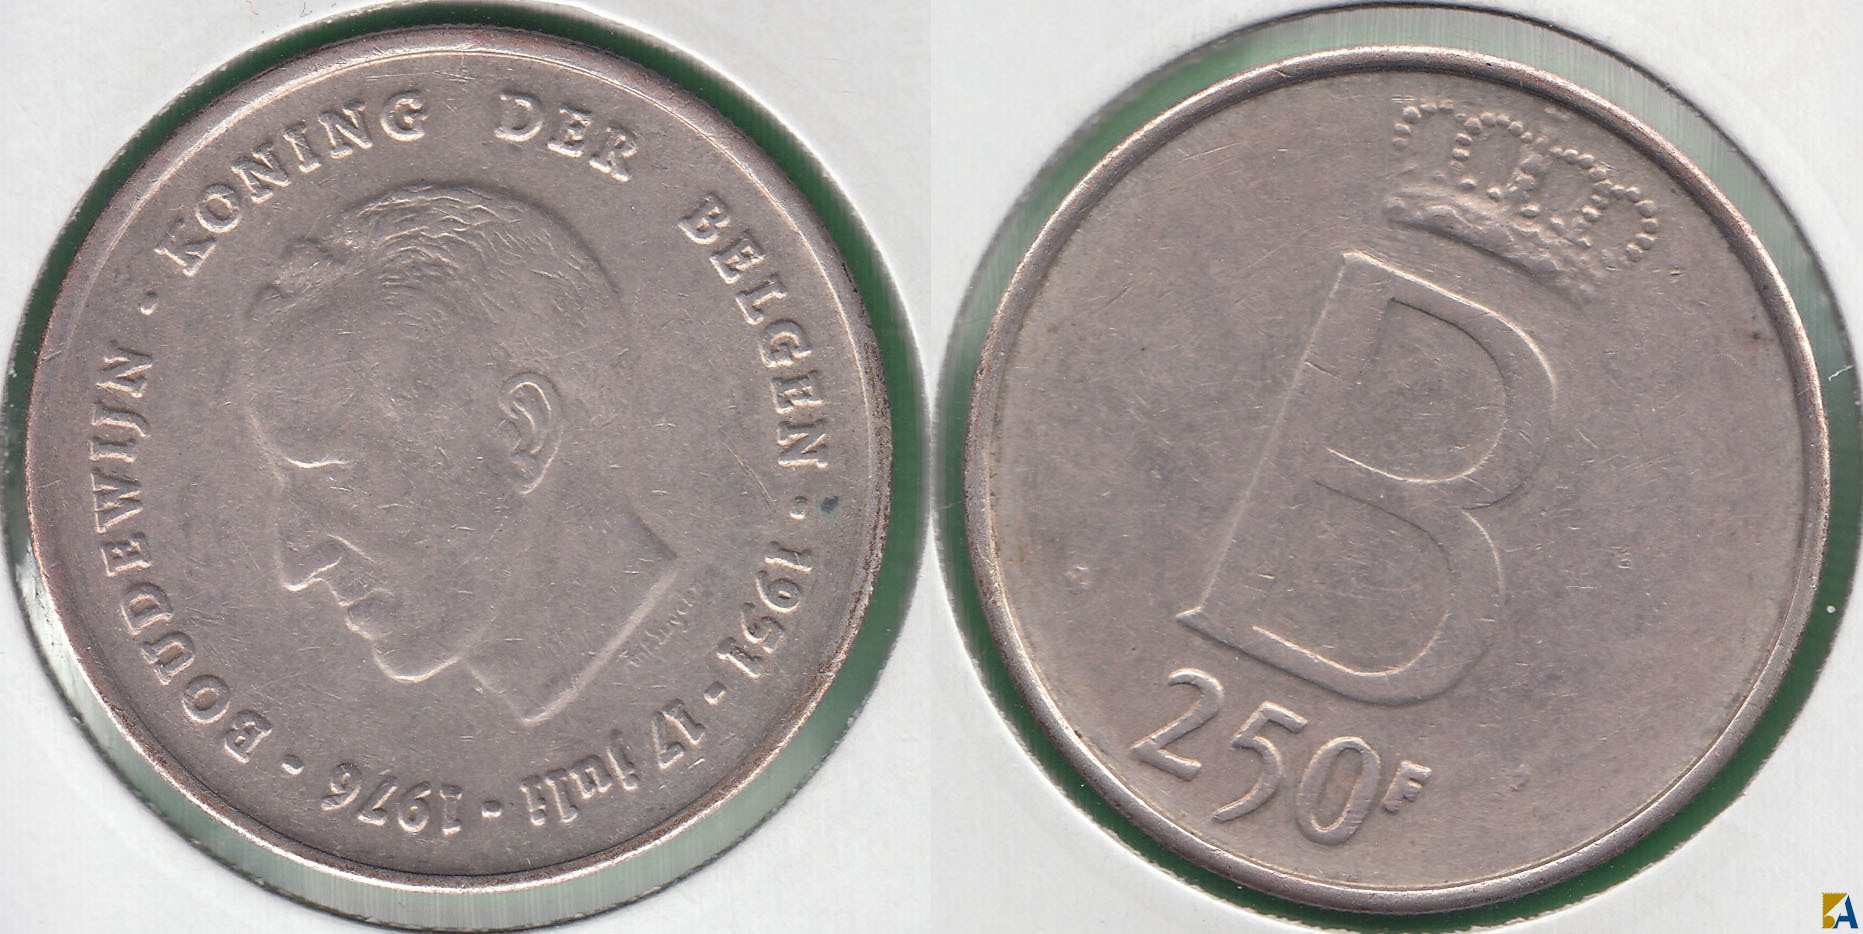 BELGICA - BELGIUM. 250 FRANCOS (FRANCS) DE 1976. PLATA 0.835. (3)